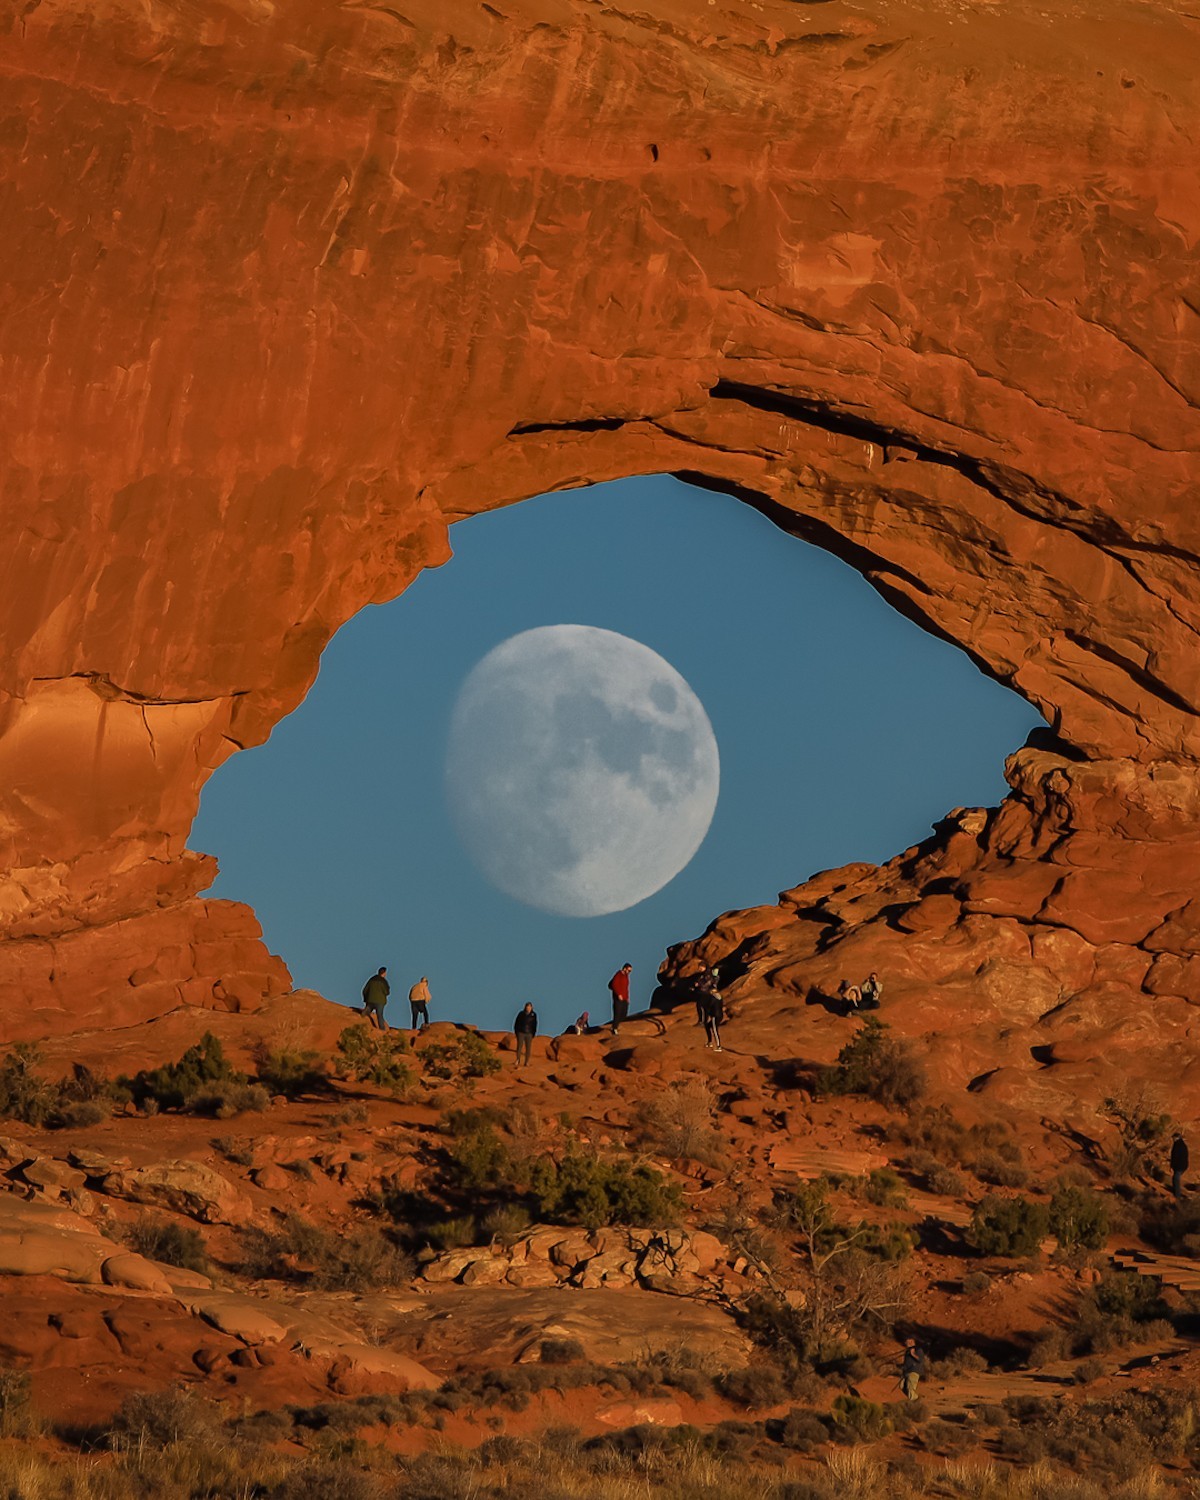 Луна, похожая на гигантский глаз, смотрящий через скальную арку в пустыне. Национальный парк Арчес, Юта. Фотограф Зак Кули